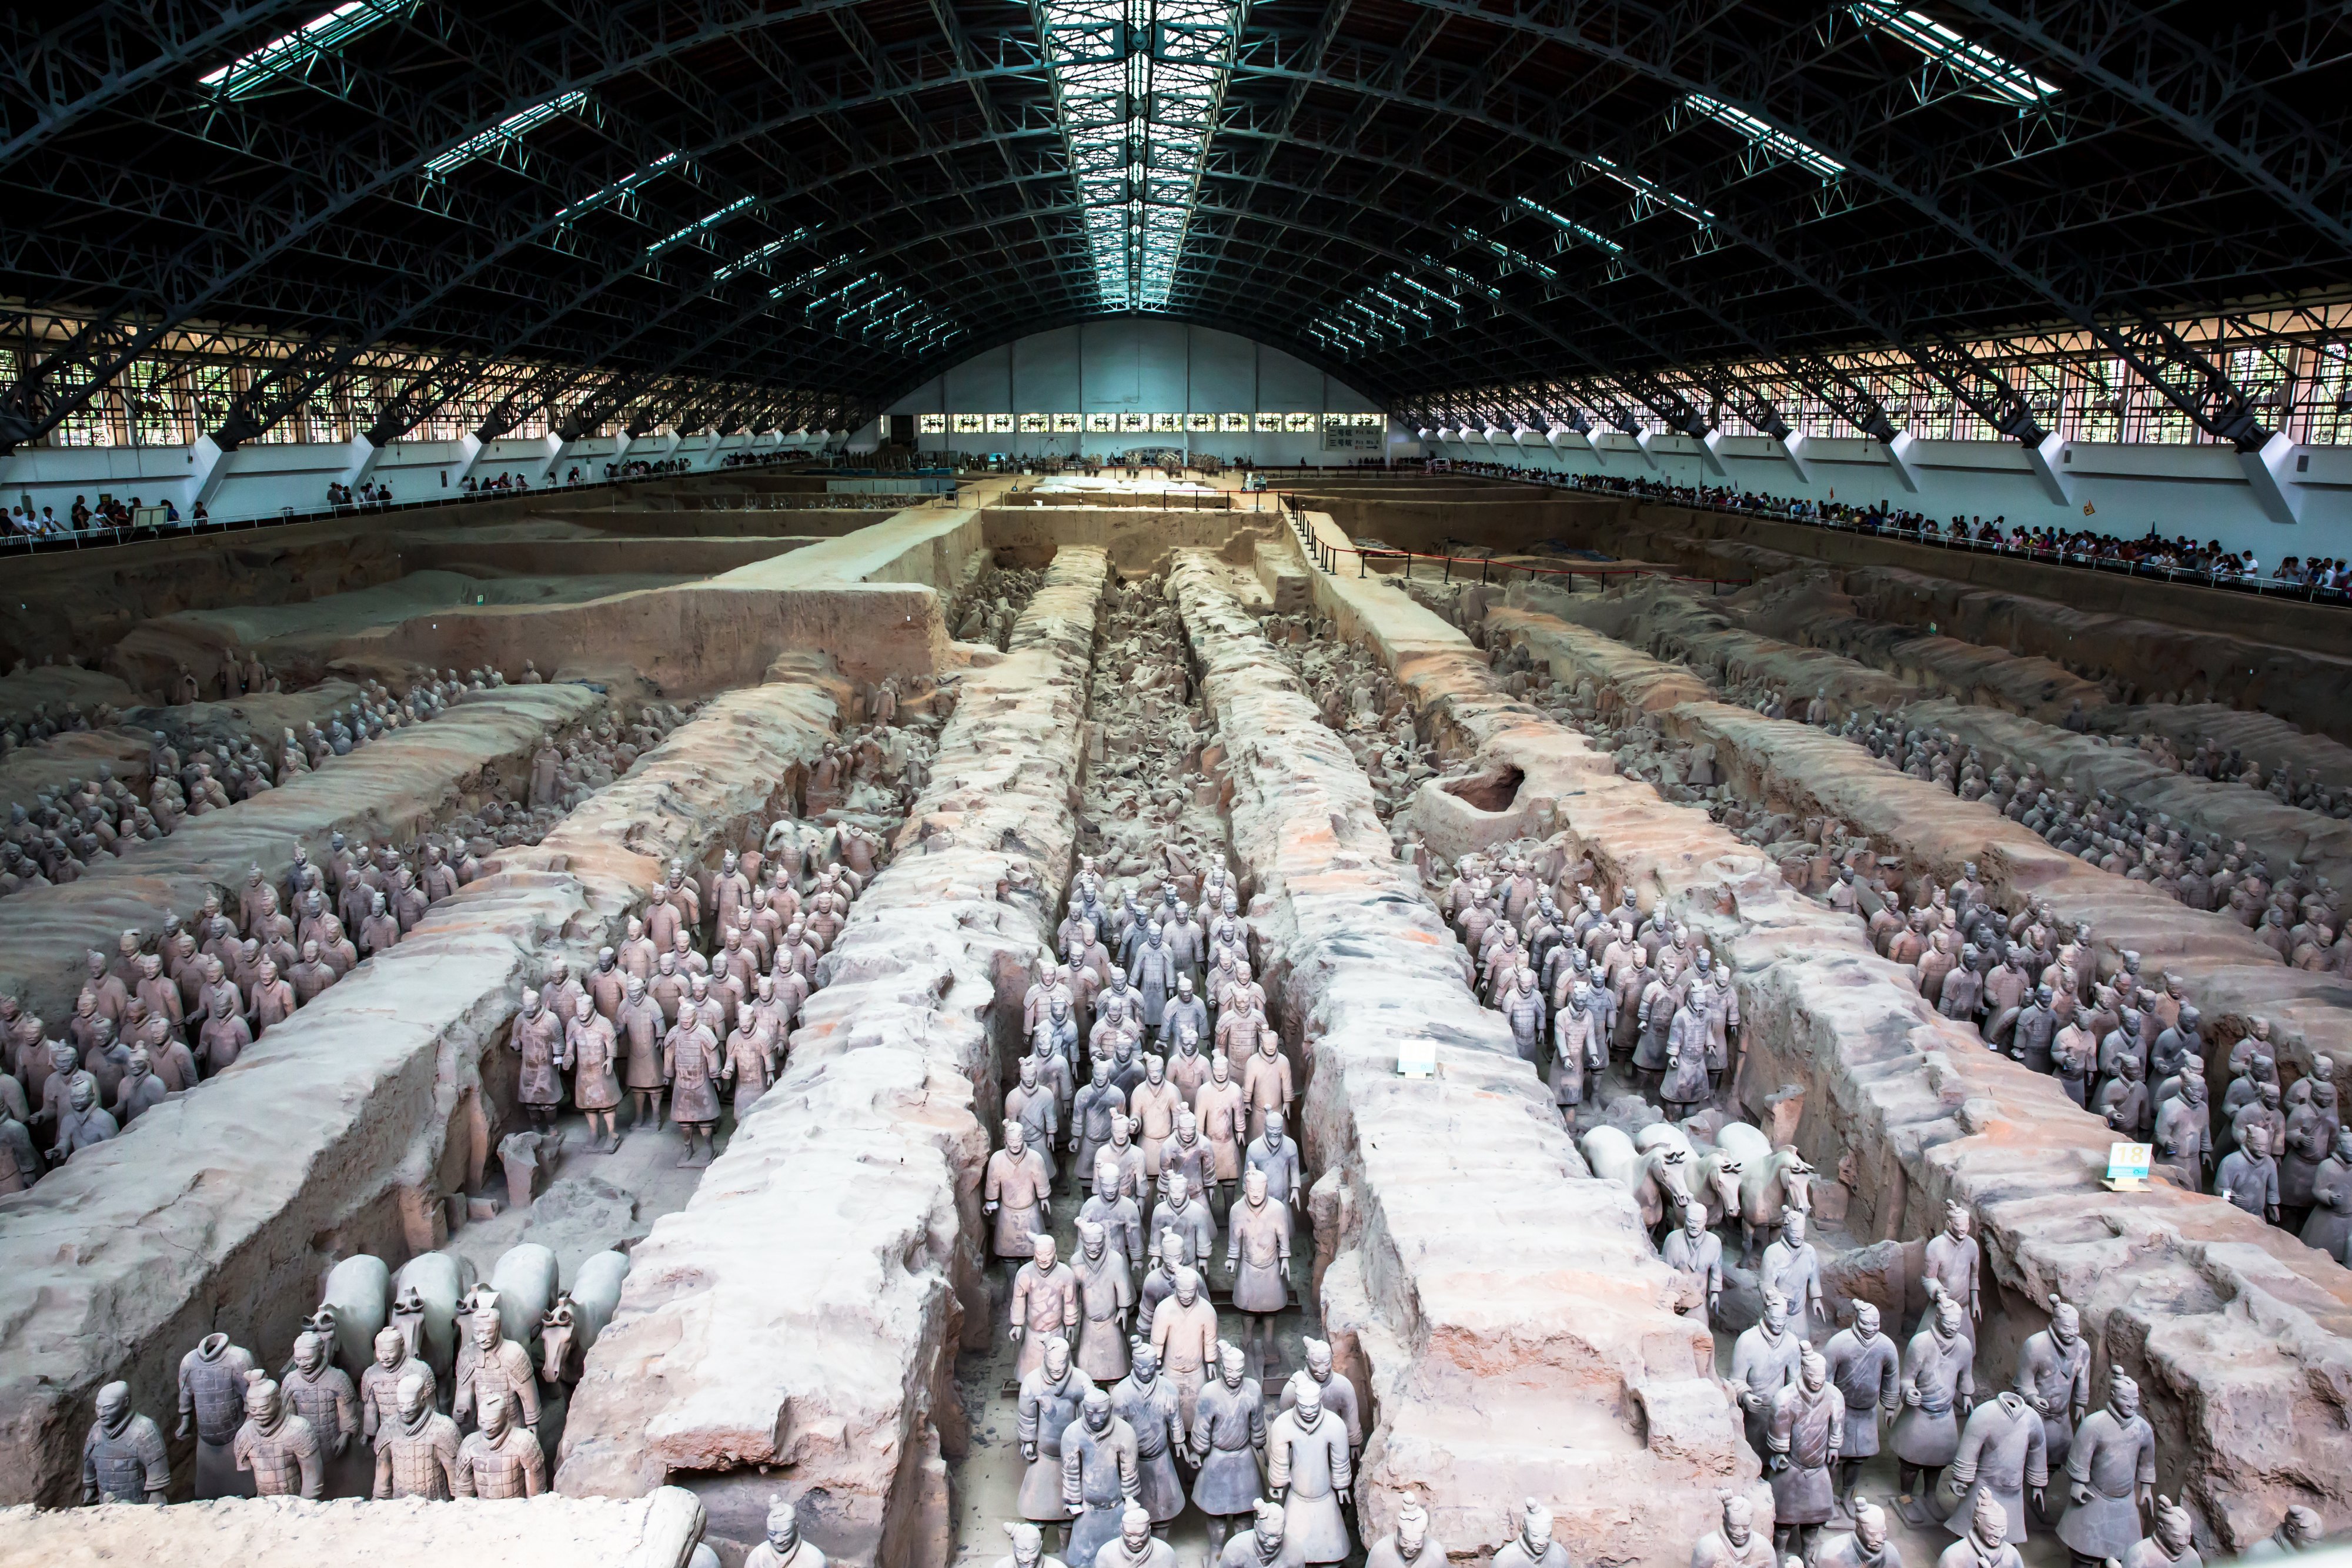 秦始皇兵马俑博物馆 - 中国陕西西安景点